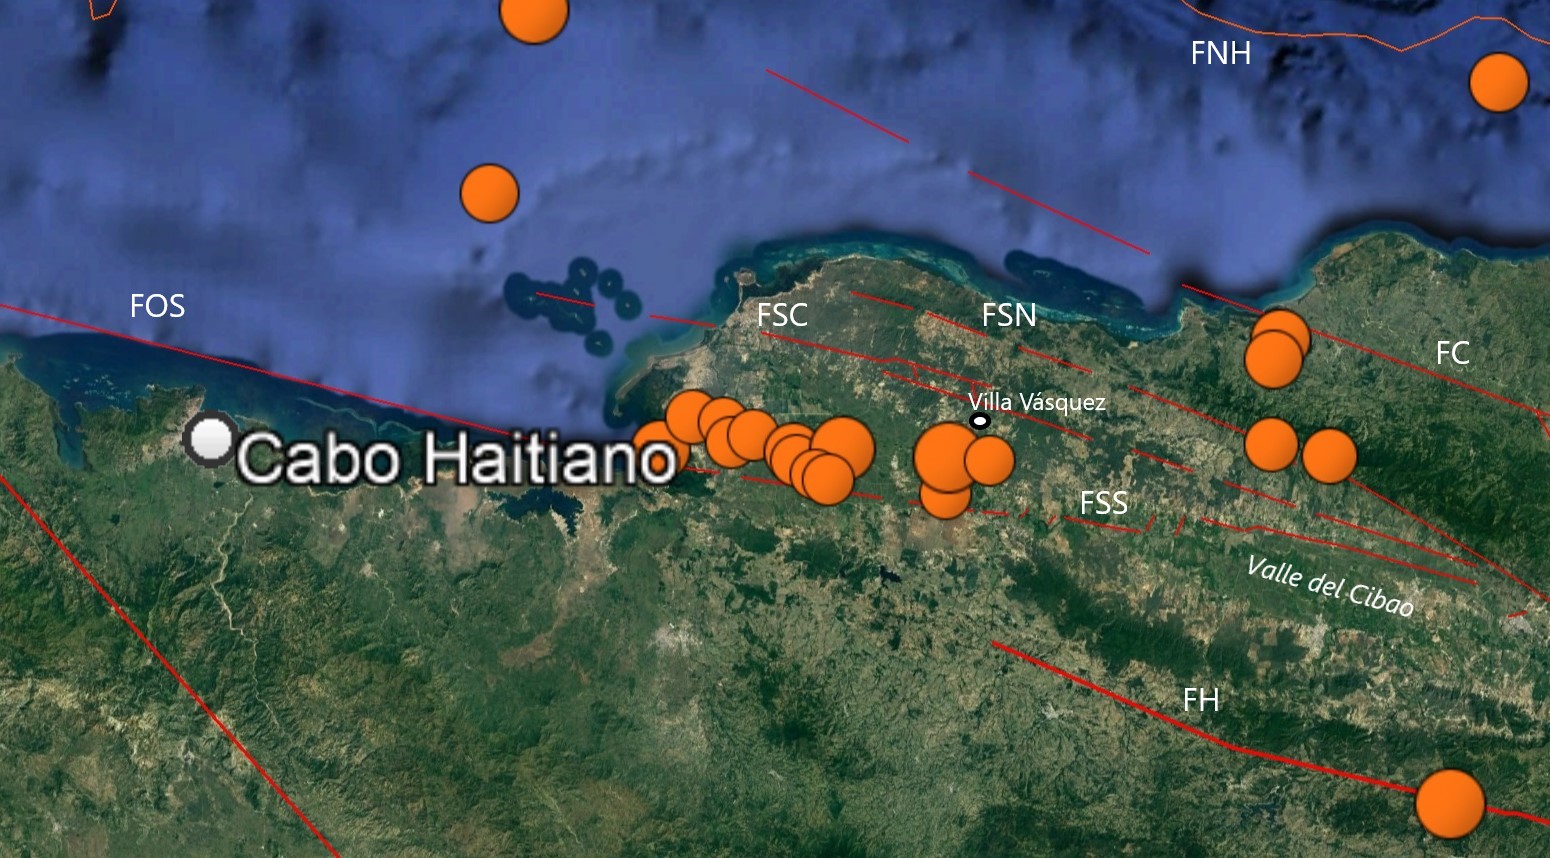 Mapa del Noroeste de la República Dominicana mostrando detalle de sismicidad próximo al flanco Sur de la Falla Septentrional (FSS). Se muestran las diferentes fallas de la zona: FOS: Falla Oriente-Septentrional, FH: Falla Hispaniola, FSC: Falla Villa Vásquez o flanco Sur de la Falla Septentrional, FSN: Flanco Norte de la Falla Septentrional o Frente de Montaña, FC: Falla Camú y FNH: Falla Norte de la Hispaniola.